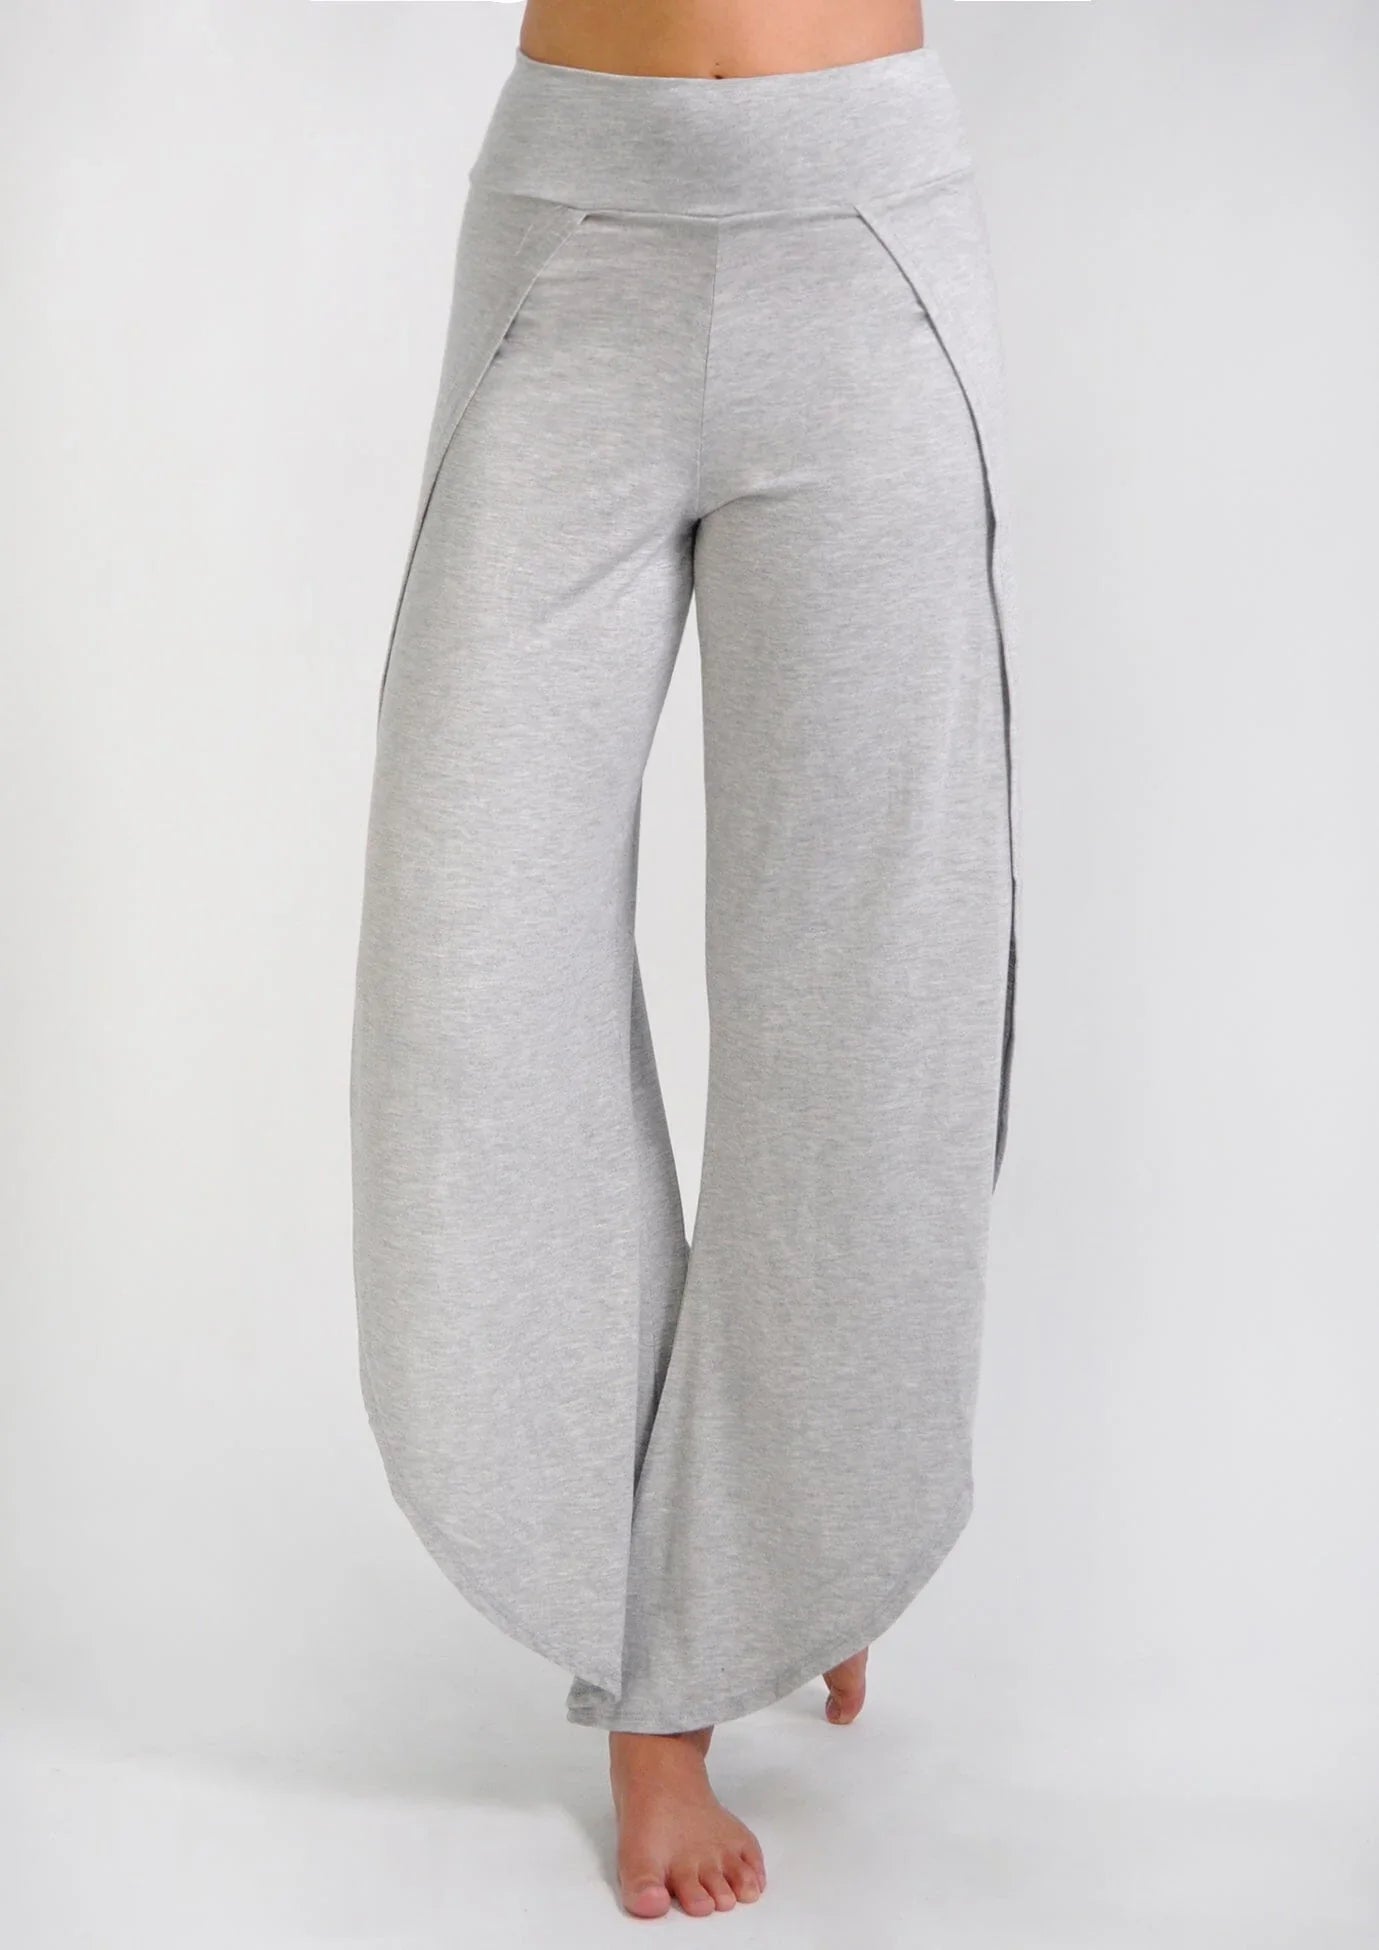 Truactivewear Grey Bootcut Yoga Pants Size Medium♡♡